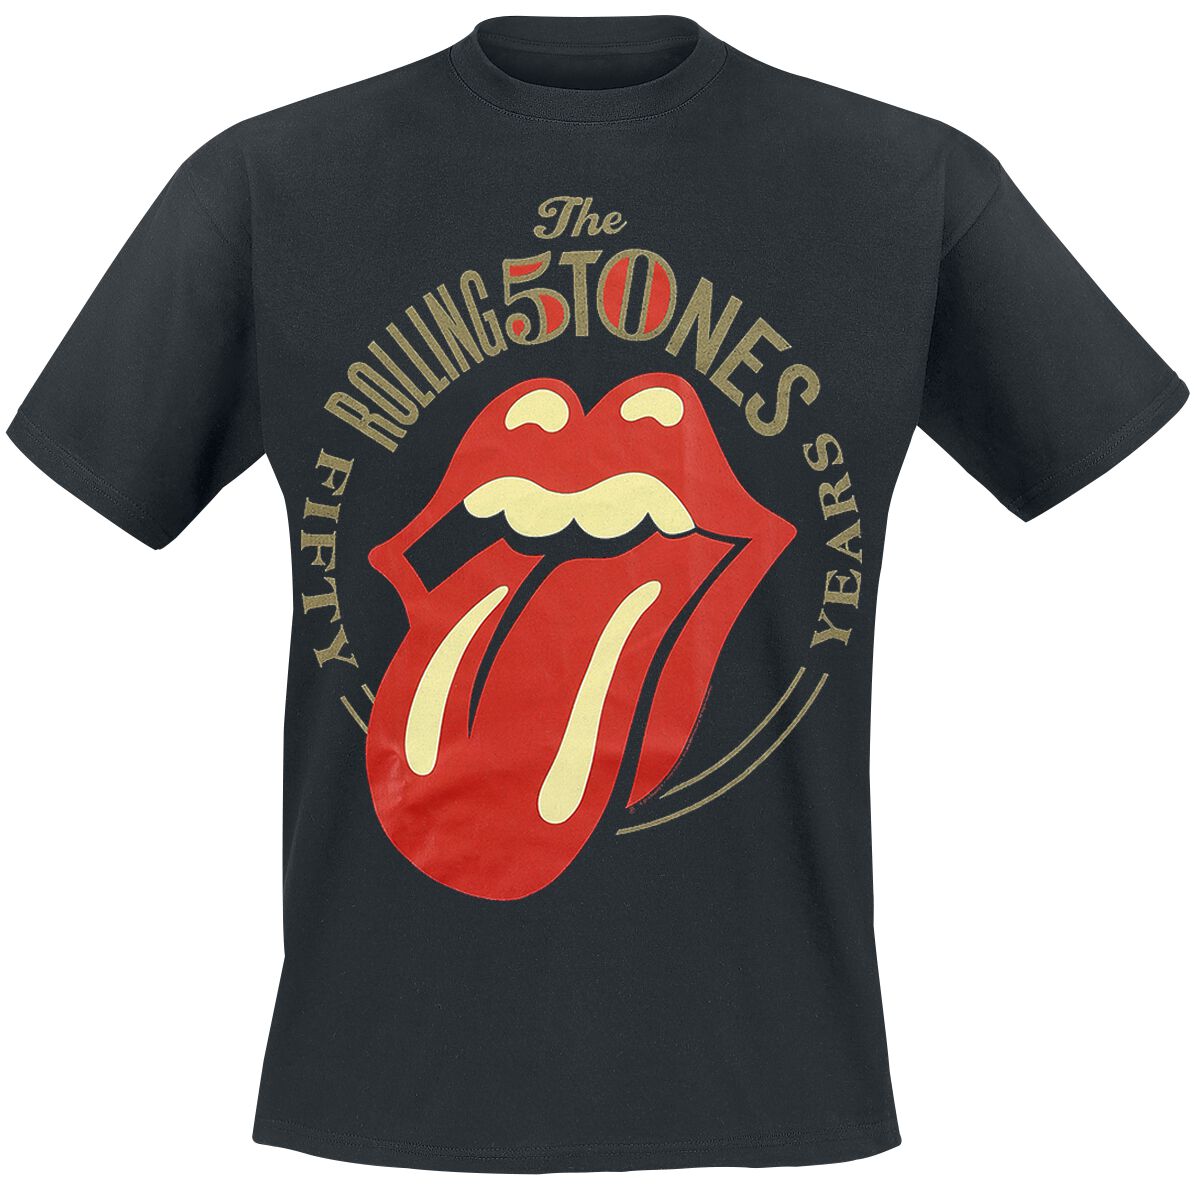 The Rolling Stones T-Shirt - 50 Years - M bis 3XL - für Männer - Größe L - schwarz  - Lizenziertes Merchandise!